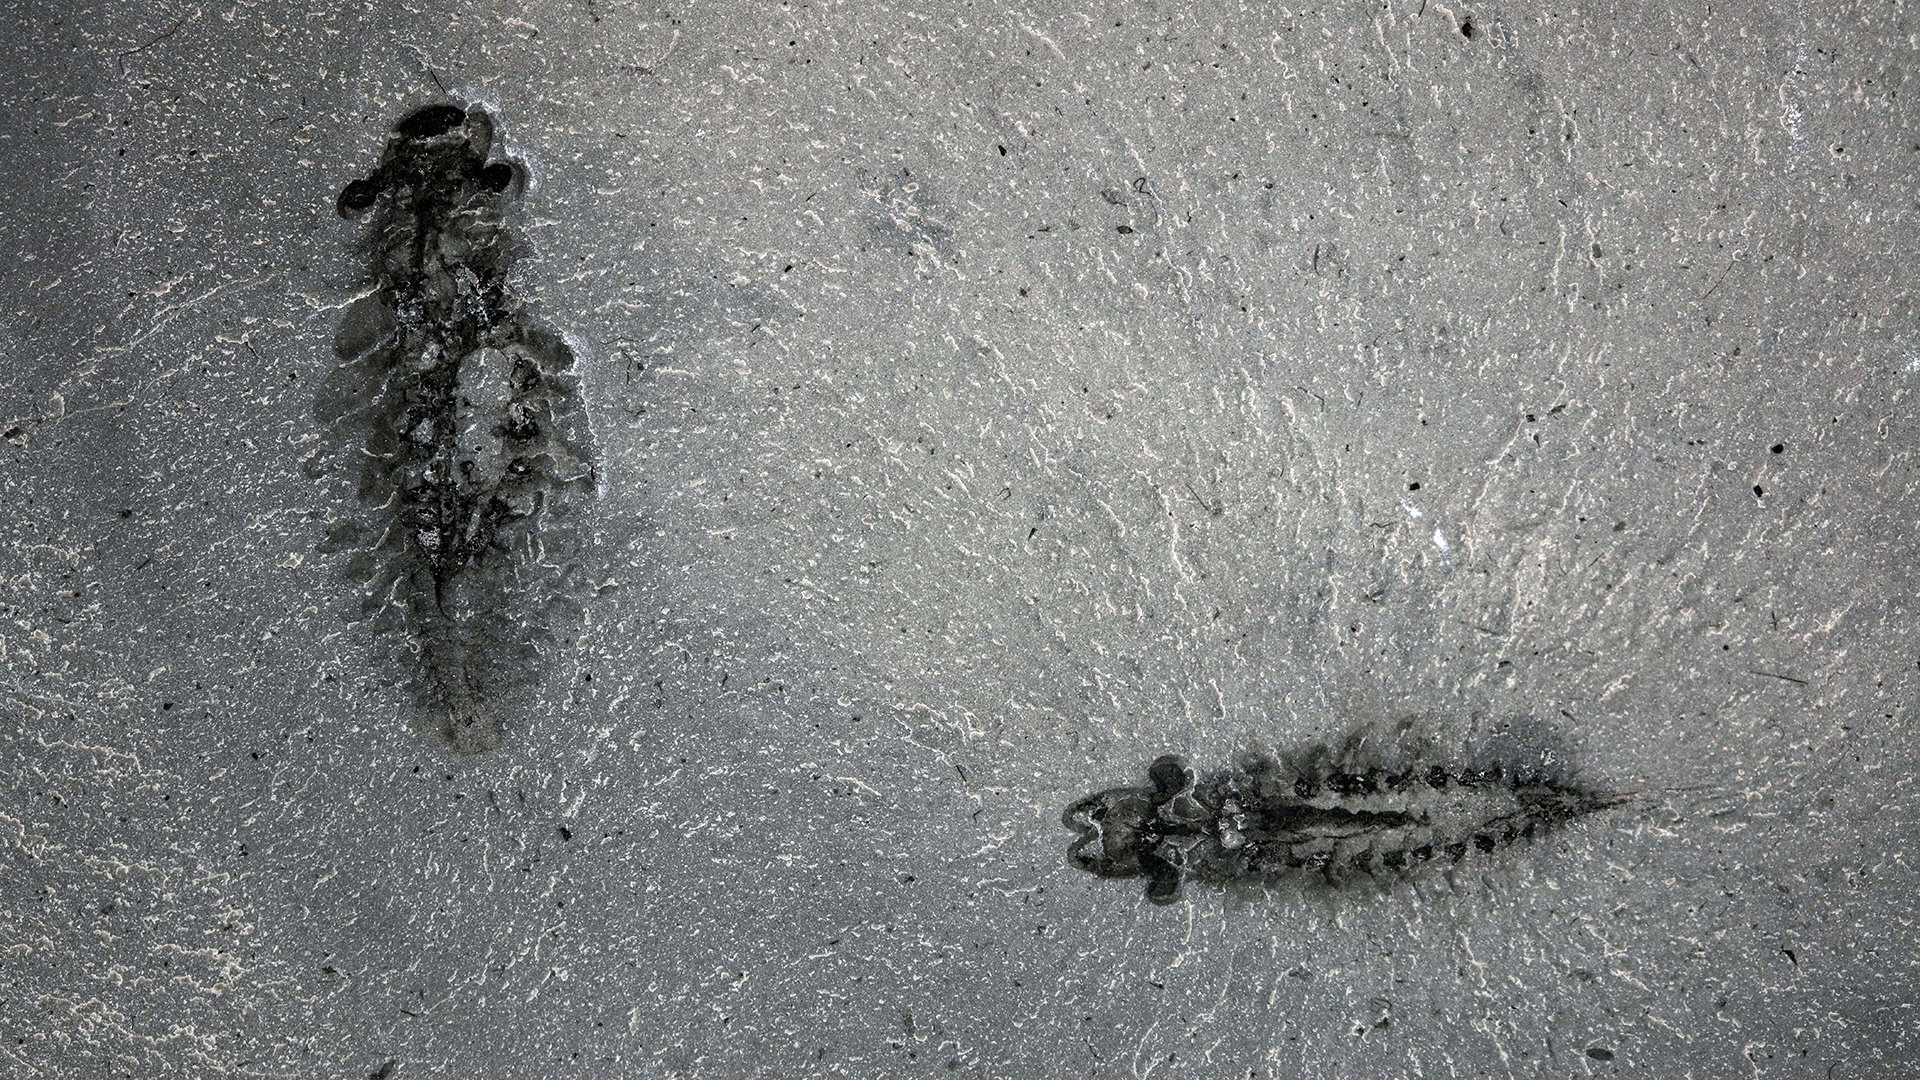 A pair of fossil specimens of Stanleycaris hirpex, ROMIP specimen 65674.1-2.